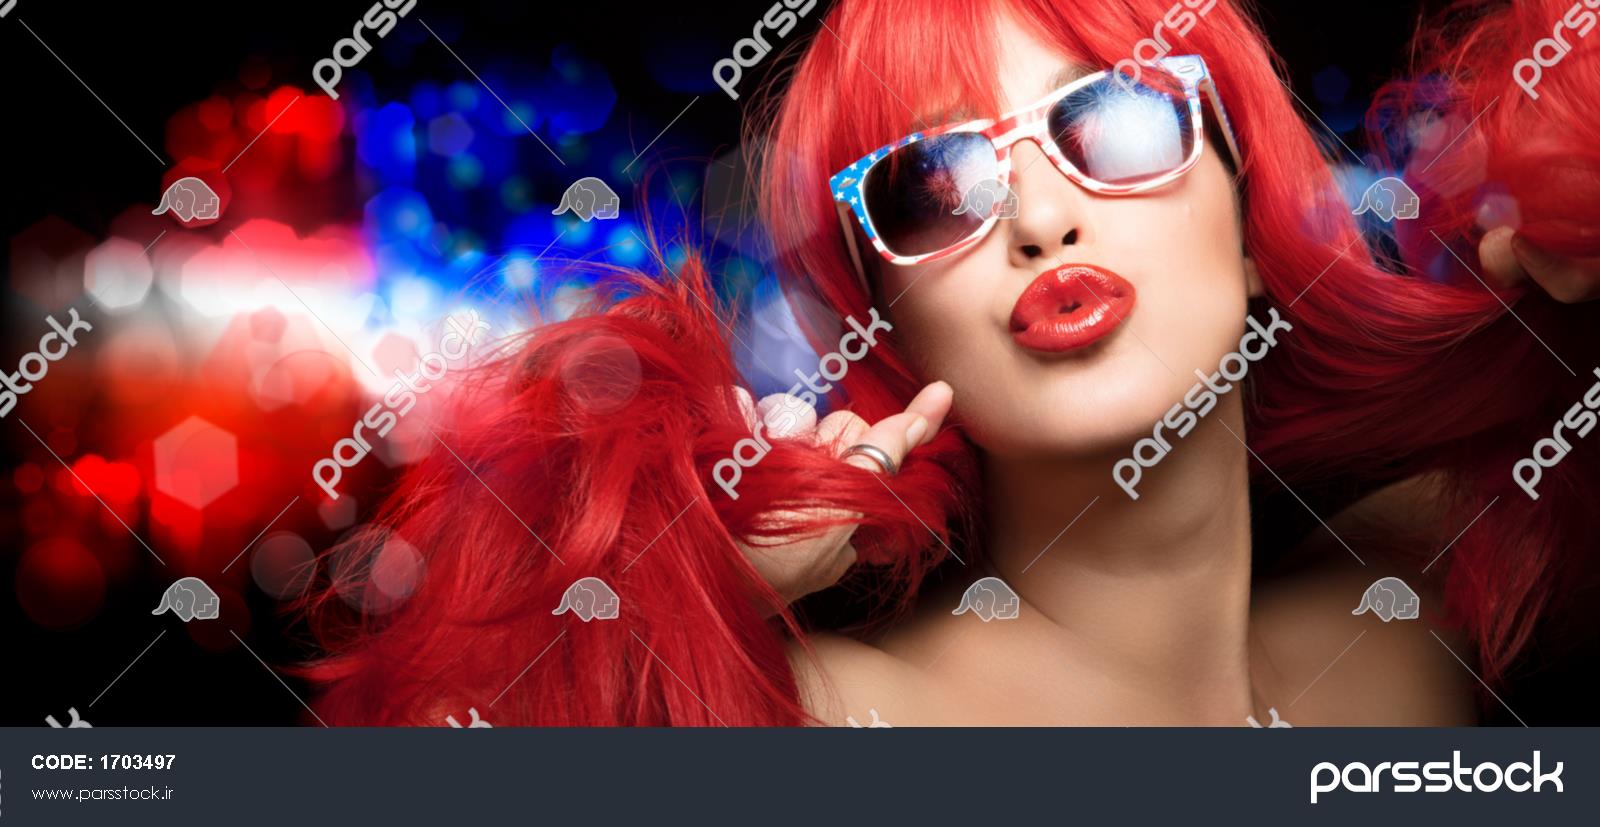 زن زیبای سکسی با موهای قرمز بلند با عینک آفتابی پرچم آمریکا چهارم ژوئیه را  جشن می گیرد و لب های پرپشت خود را در یک حرکت حسی به دوربین می زند